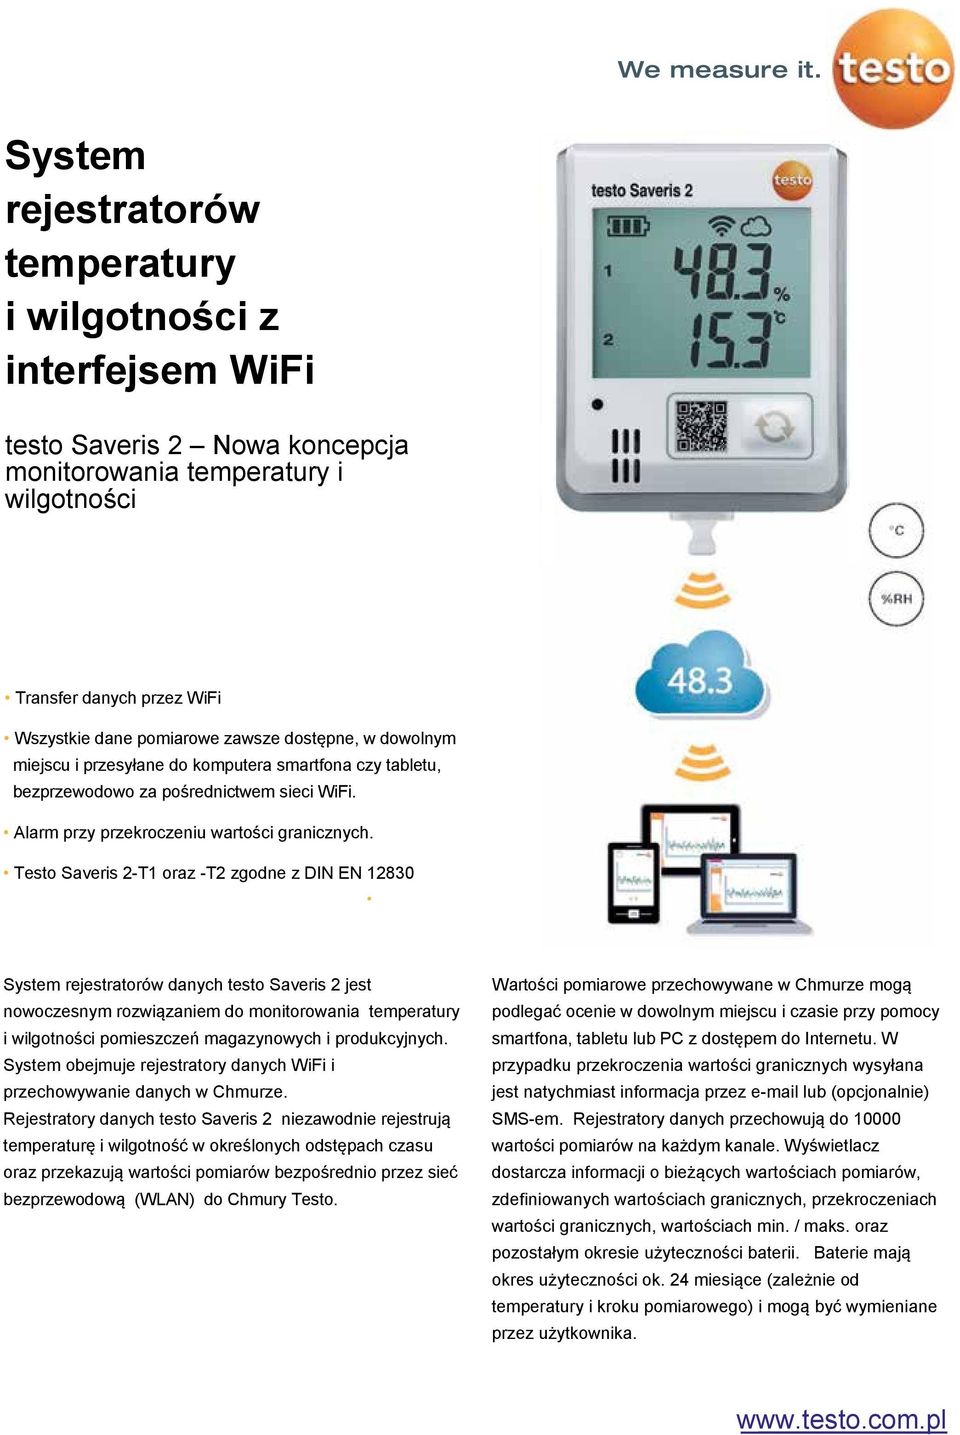 Testo Saveris 2-T1 oraz -T2 zgodne z DIN EN 12830 System rejestratorów danych testo Saveris 2 jest nowoczesnym rozwiązaniem do monitorowania temperatury i wilgotności pomieszczeń magazynowych i